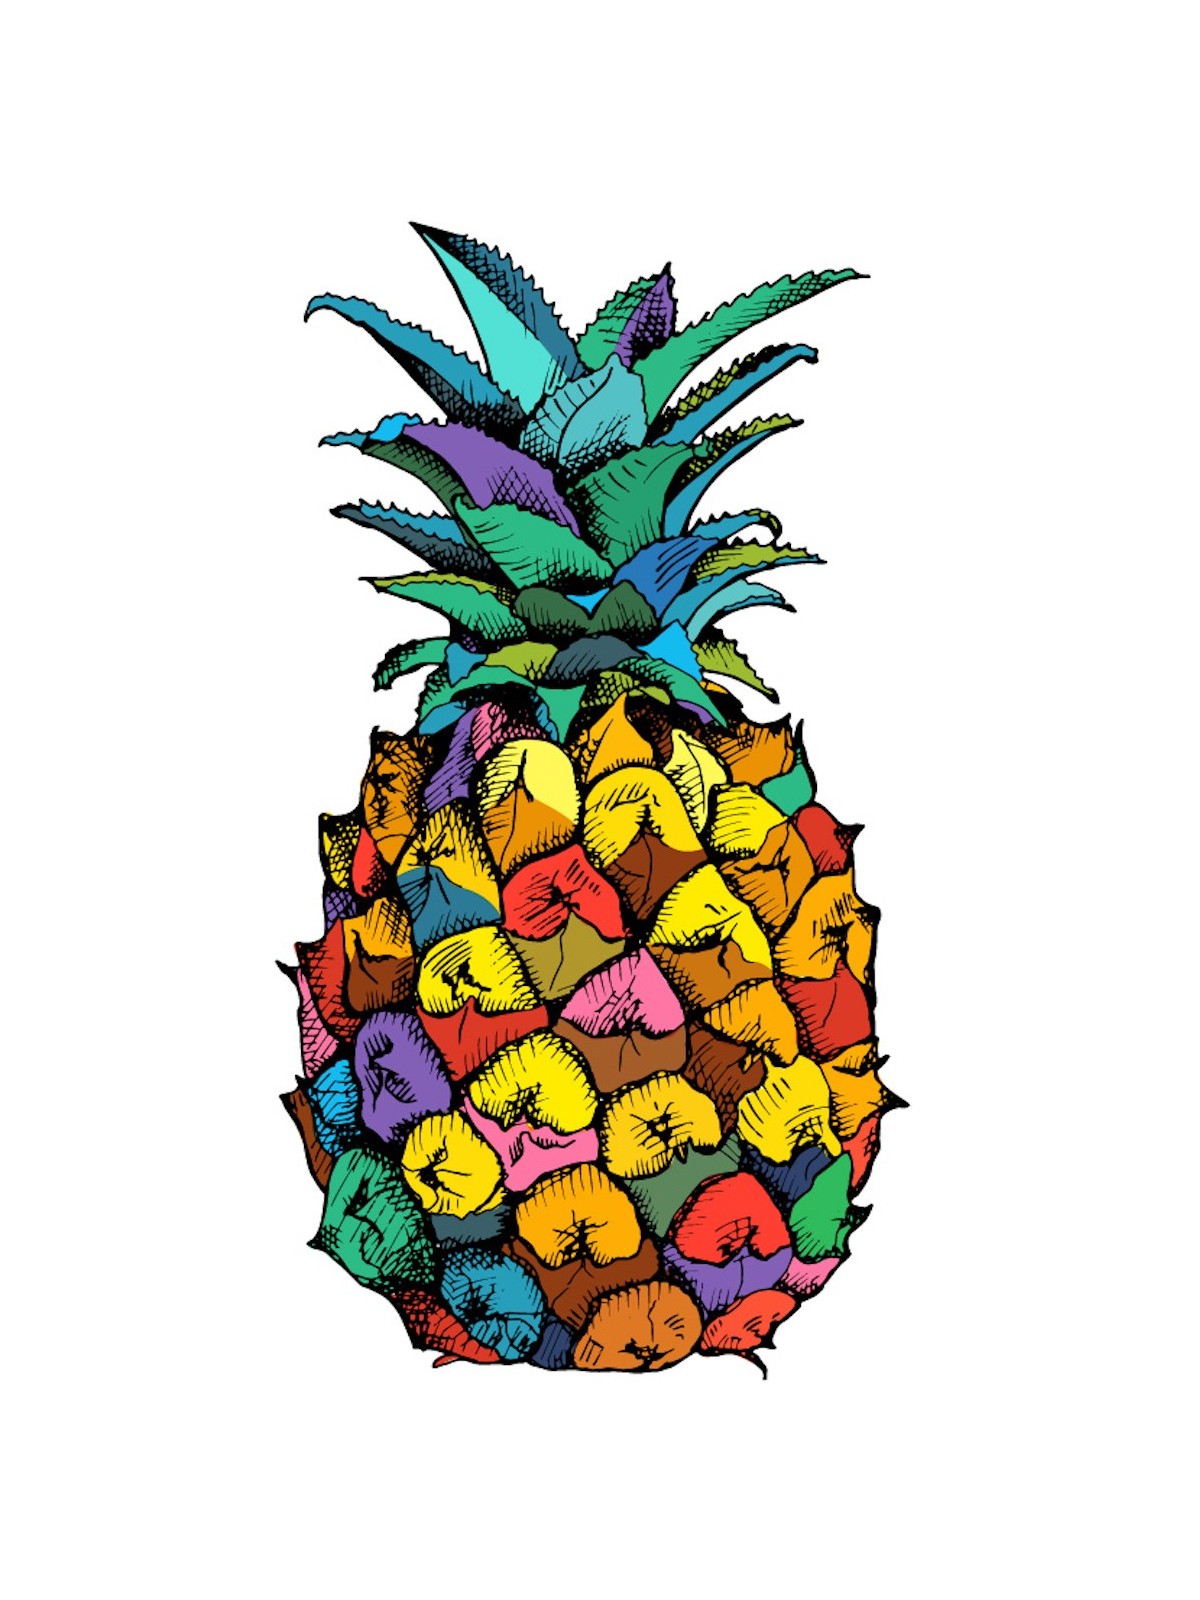 Stickers Autocollants enfant dÃ©co Fruit Ananas rÃ©f 267